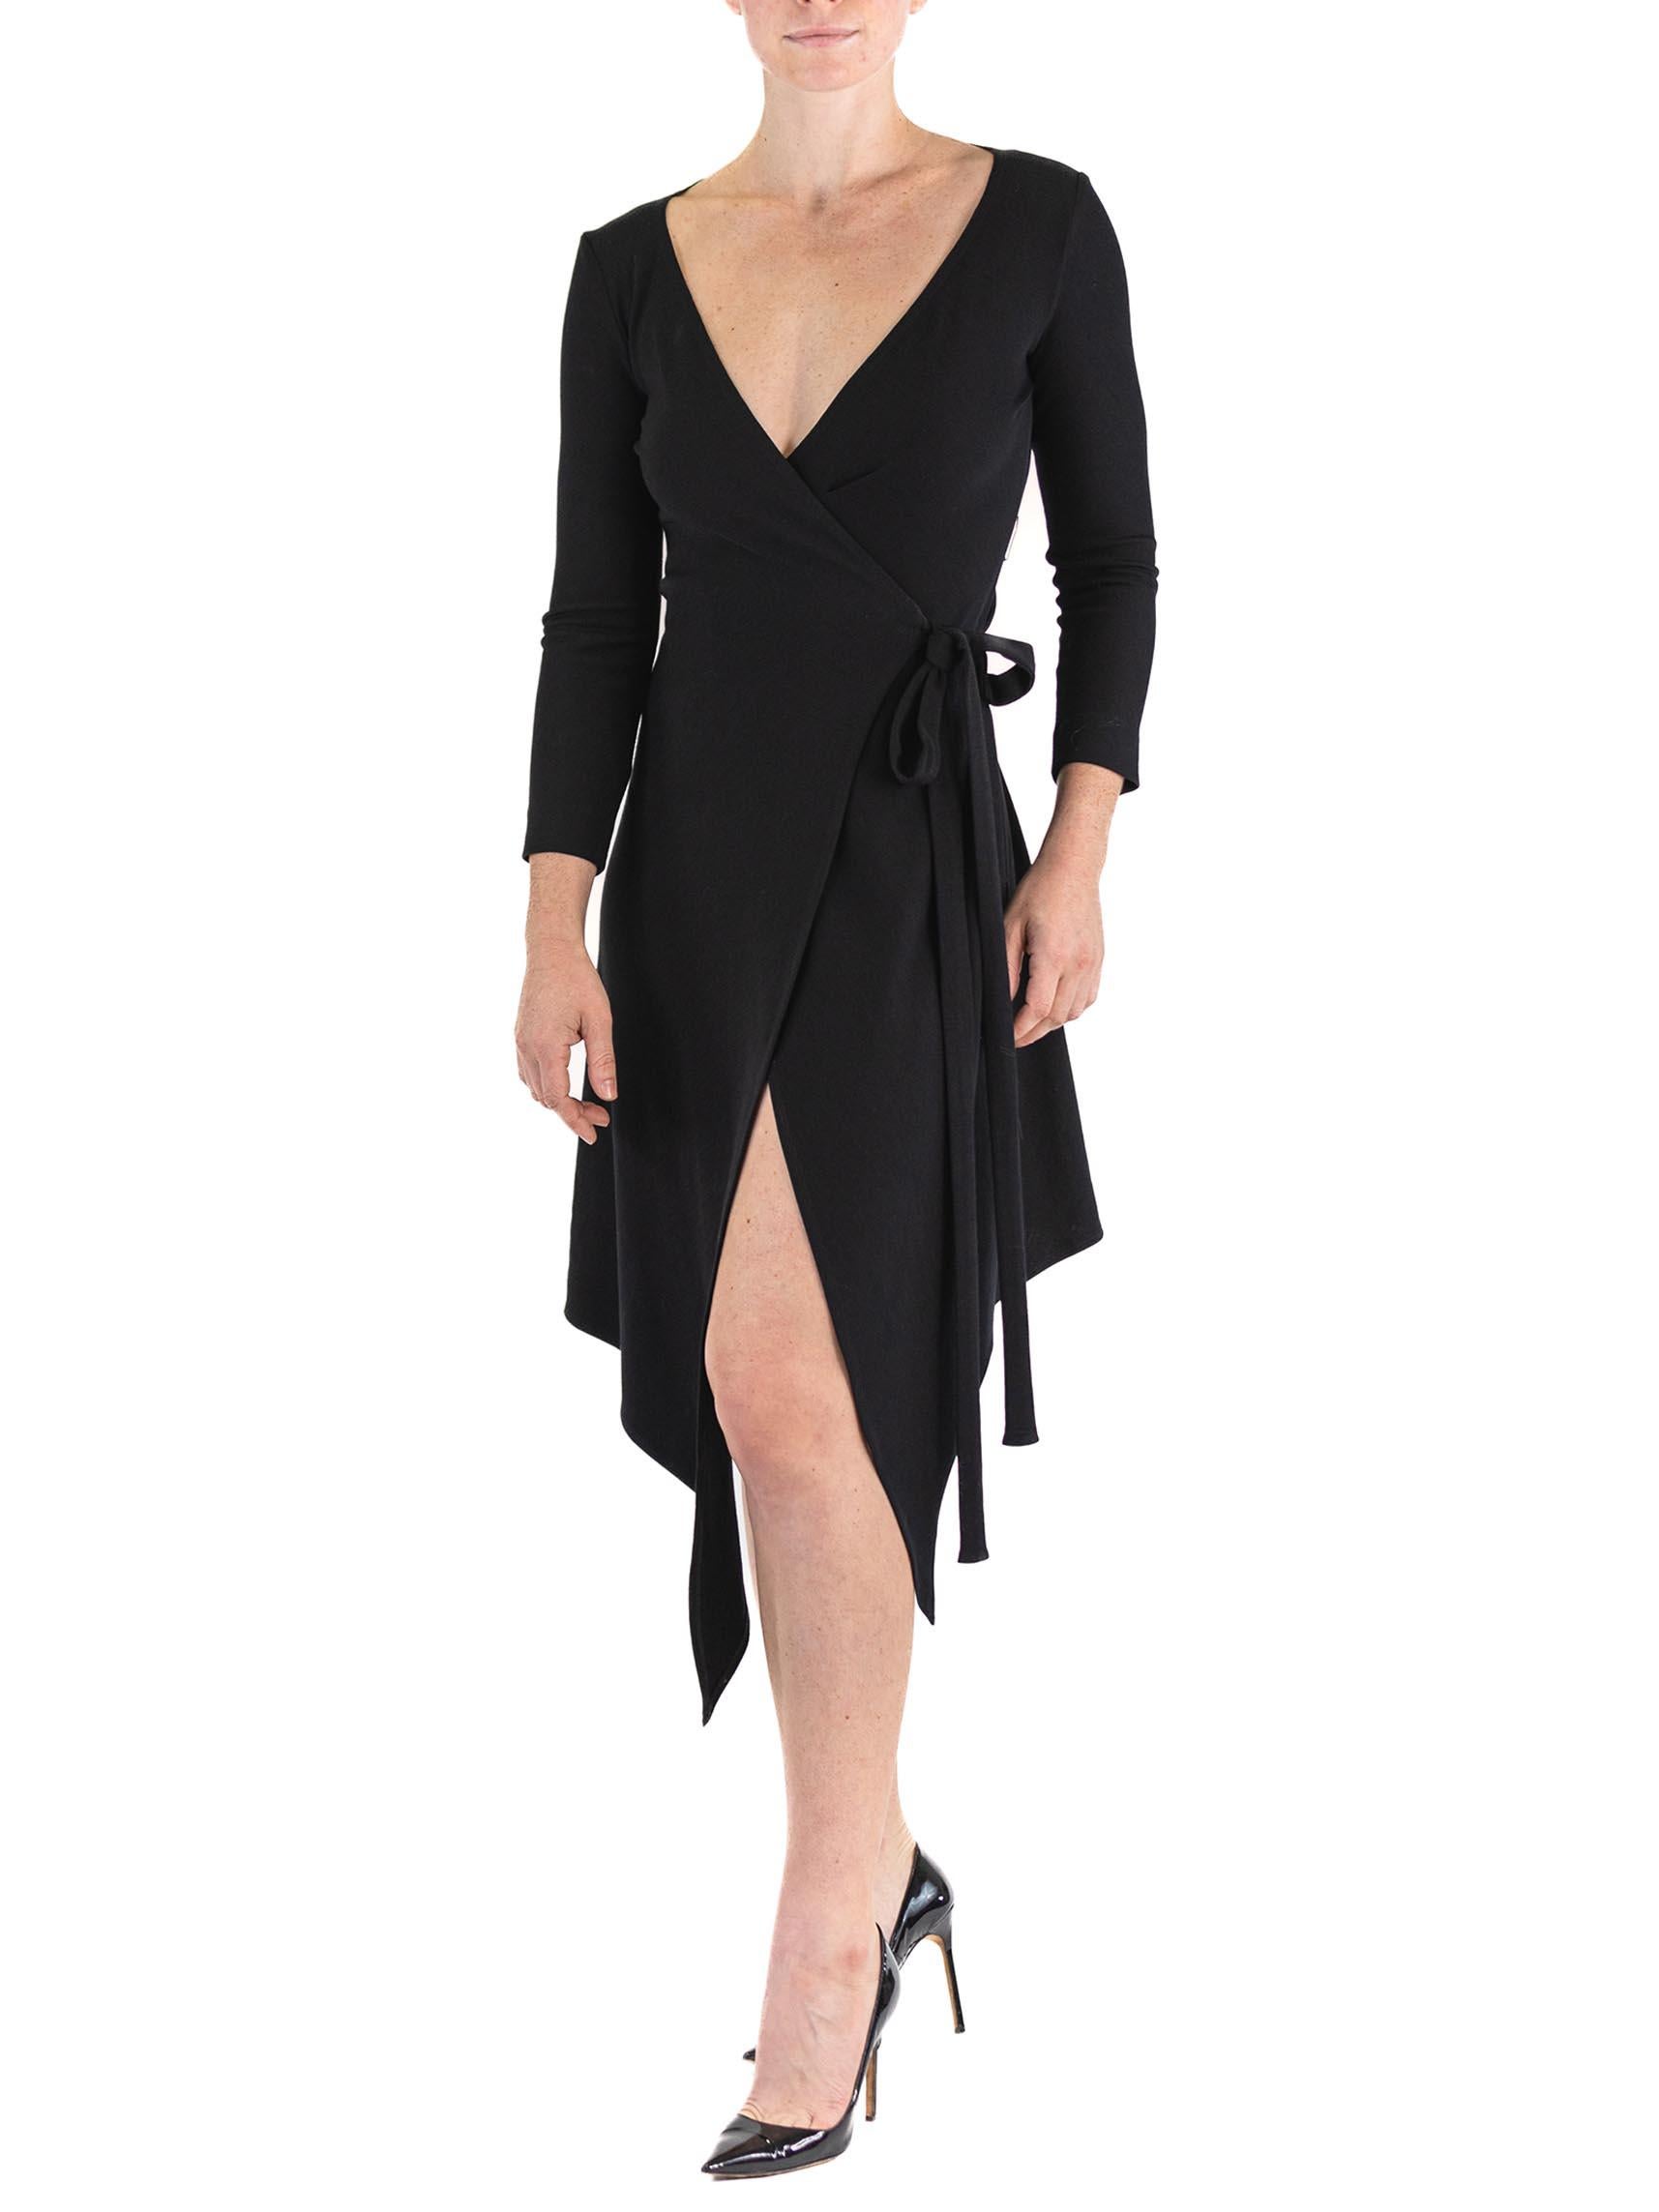 1980S DONNA KARAN Black Wool Knit Belted Wrap Dress For Sale 2